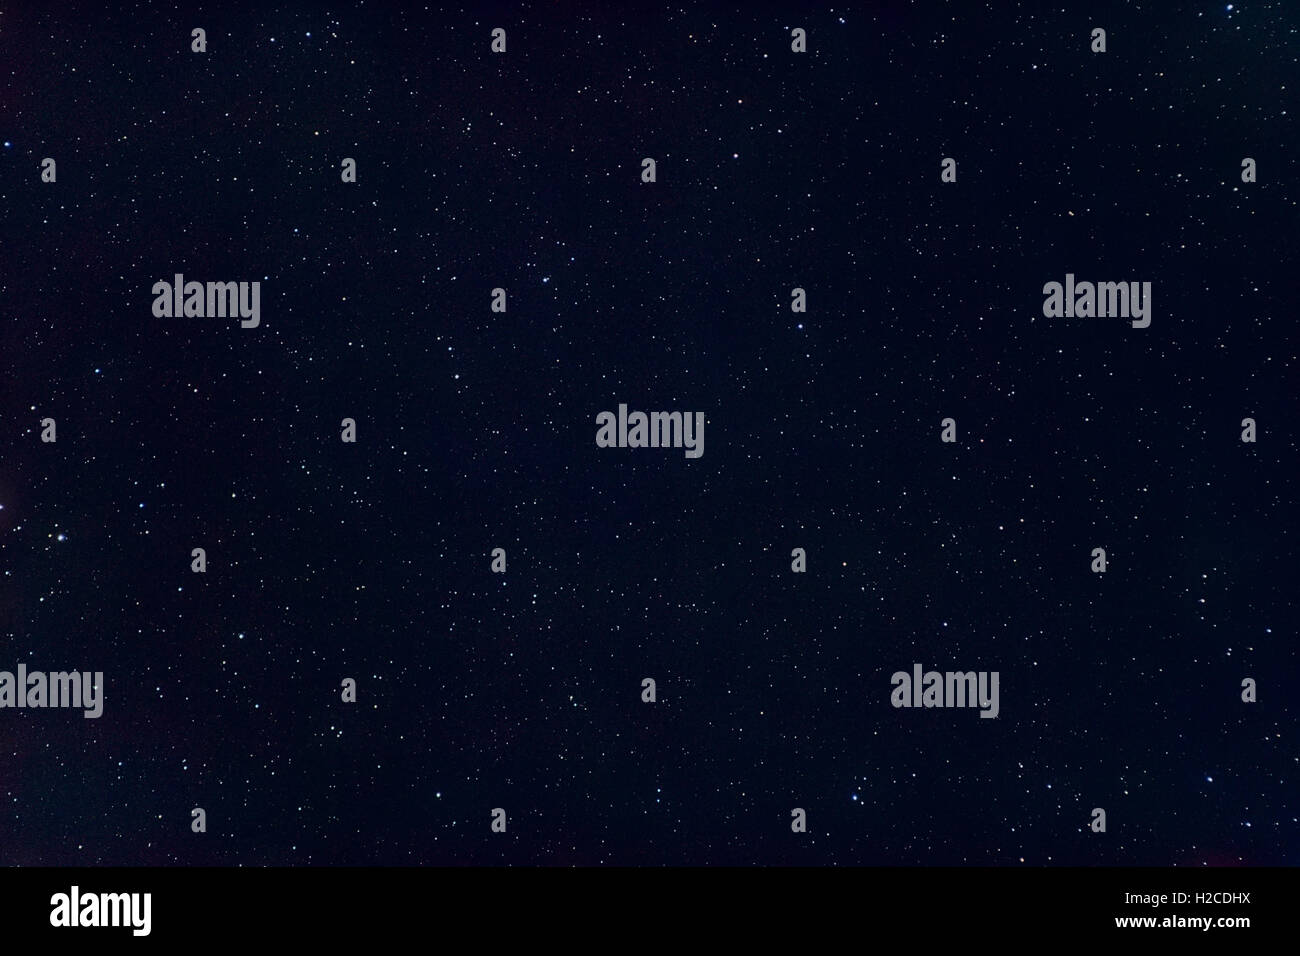 L'univers de l'espace Astronomie Résumé Contexte : Nuit noire avec des étoiles du ciel. Peut être utilisée comme papier peint. Banque D'Images